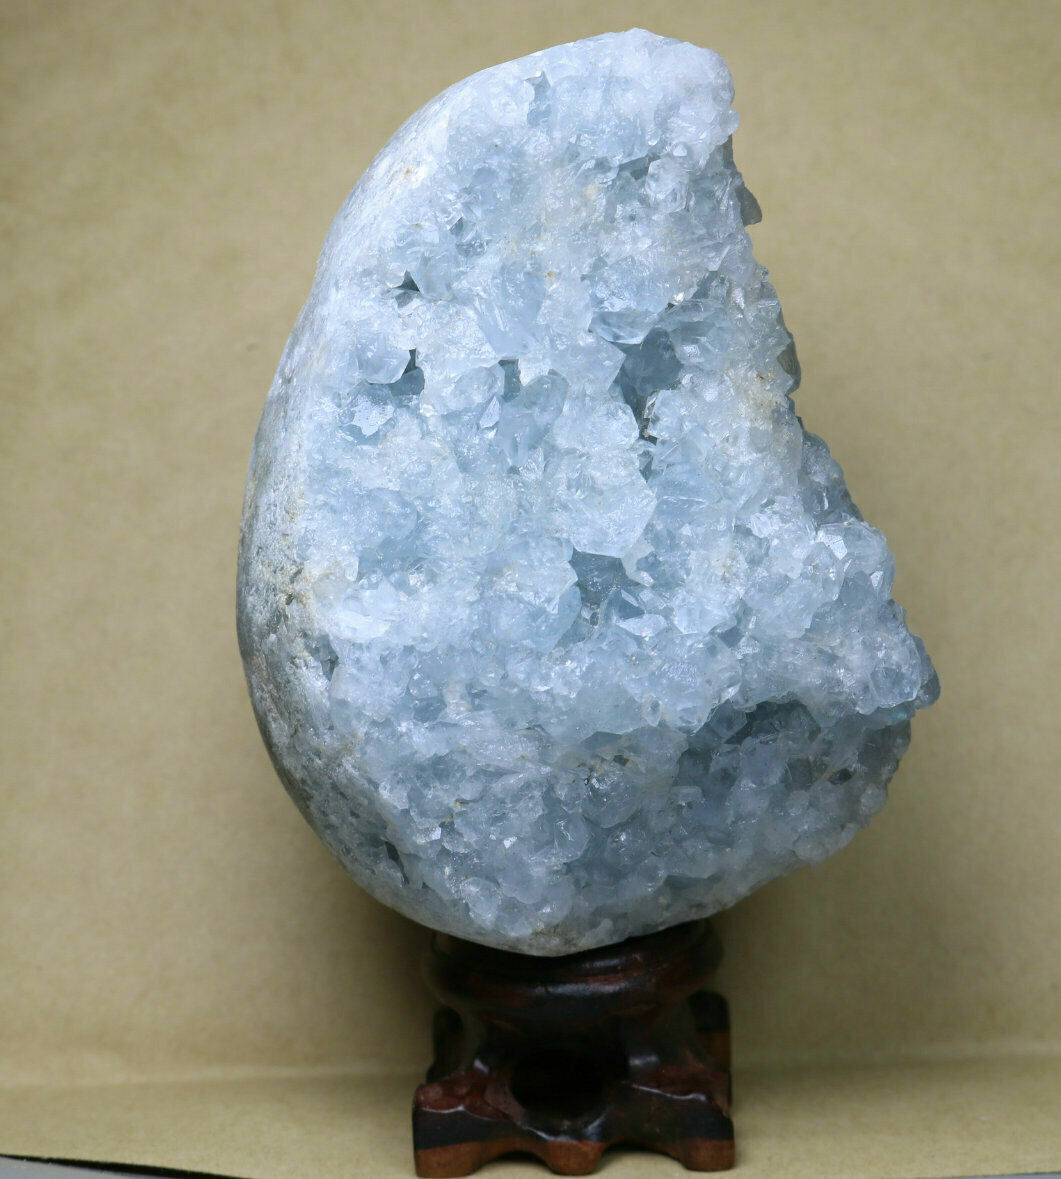  1.57lb Rare Top Grade Gorgeous Sky Blue Celestite Egg Geode Rough Reiki Crystal